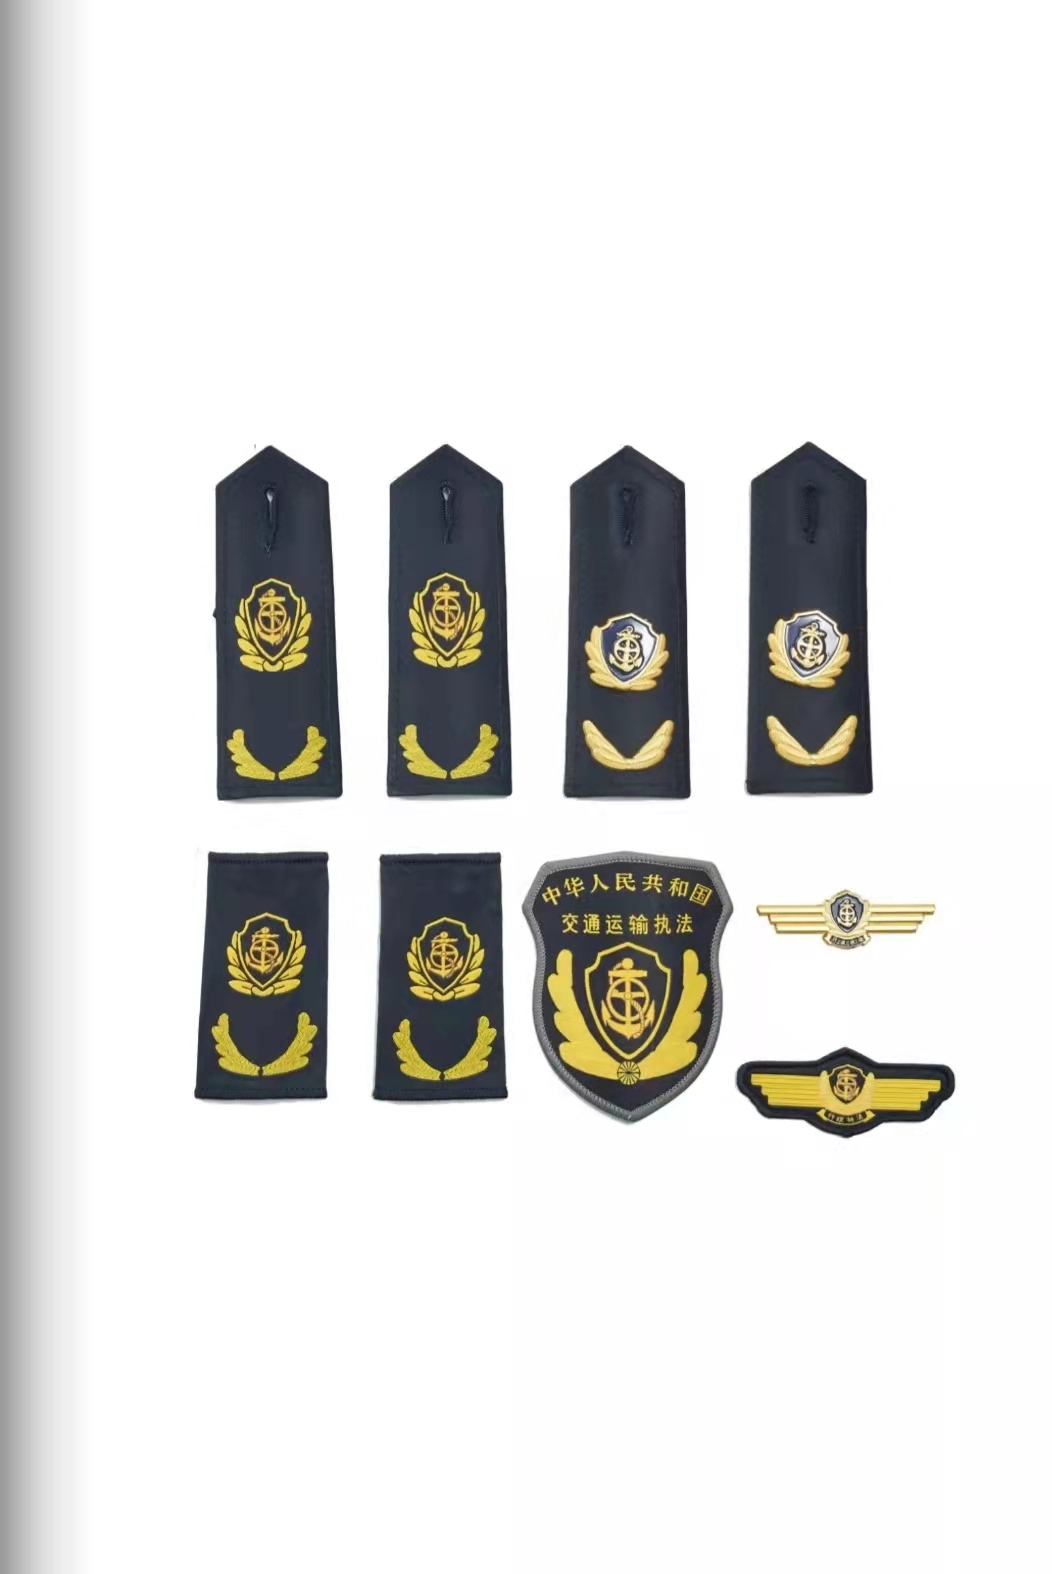 大连六部门统一交通运输执法服装标志